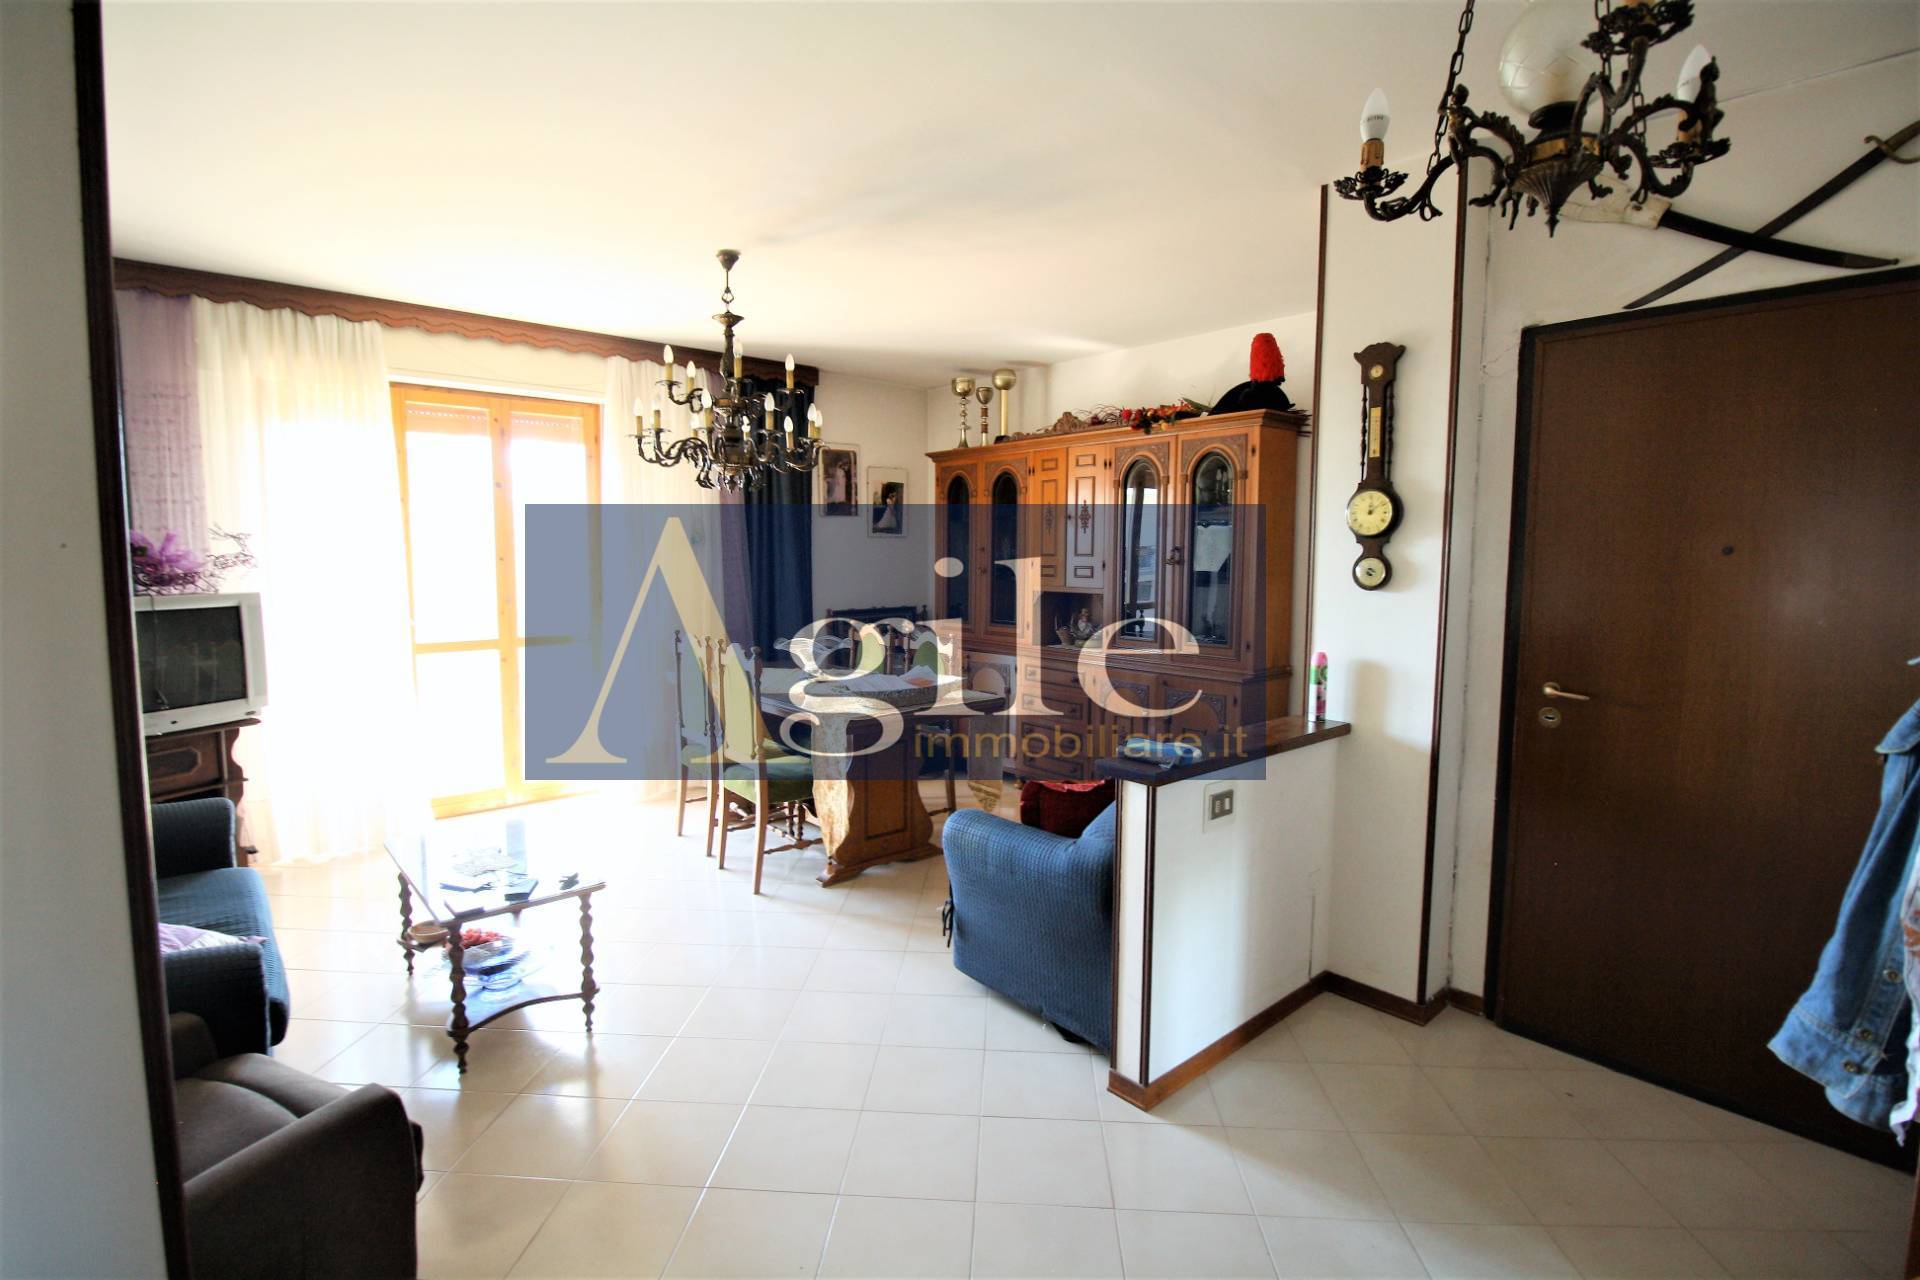 Appartamento in vendita a Colonnella, 4 locali, prezzo € 120.000 | PortaleAgenzieImmobiliari.it